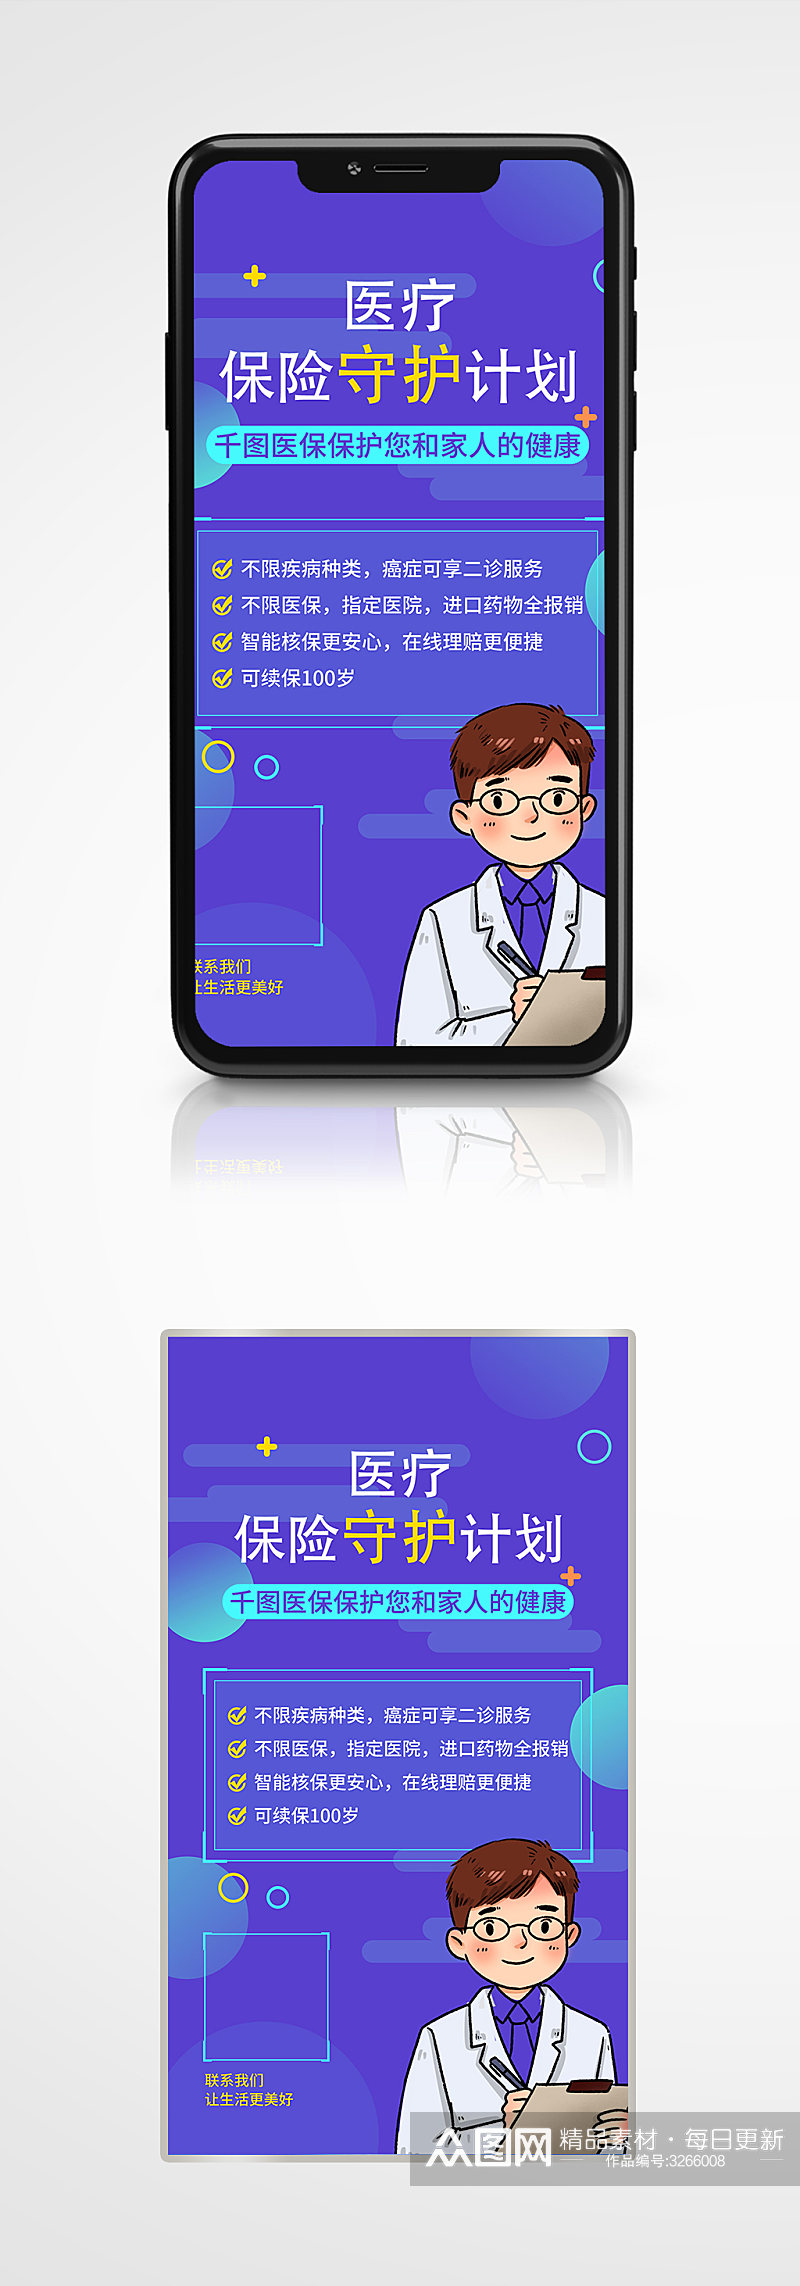 医疗保险产品推广手机海报蓝色插画促销素材